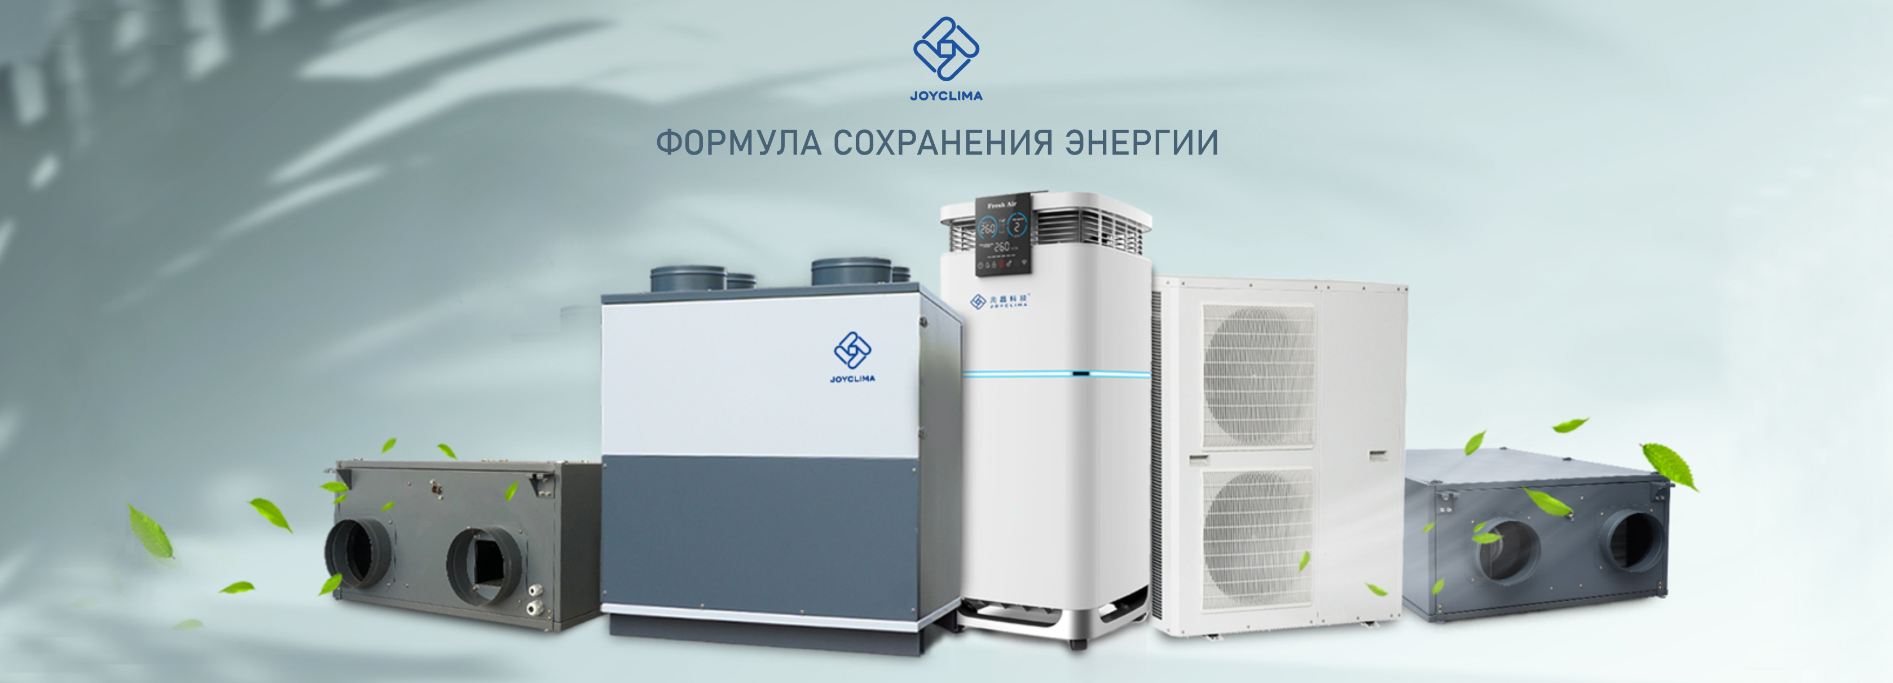 Автоматические климатические установки, приточно-вытяжные вентиляционные установки и низкотемпературные тепловые насосы "воздух-вода" от производителя 